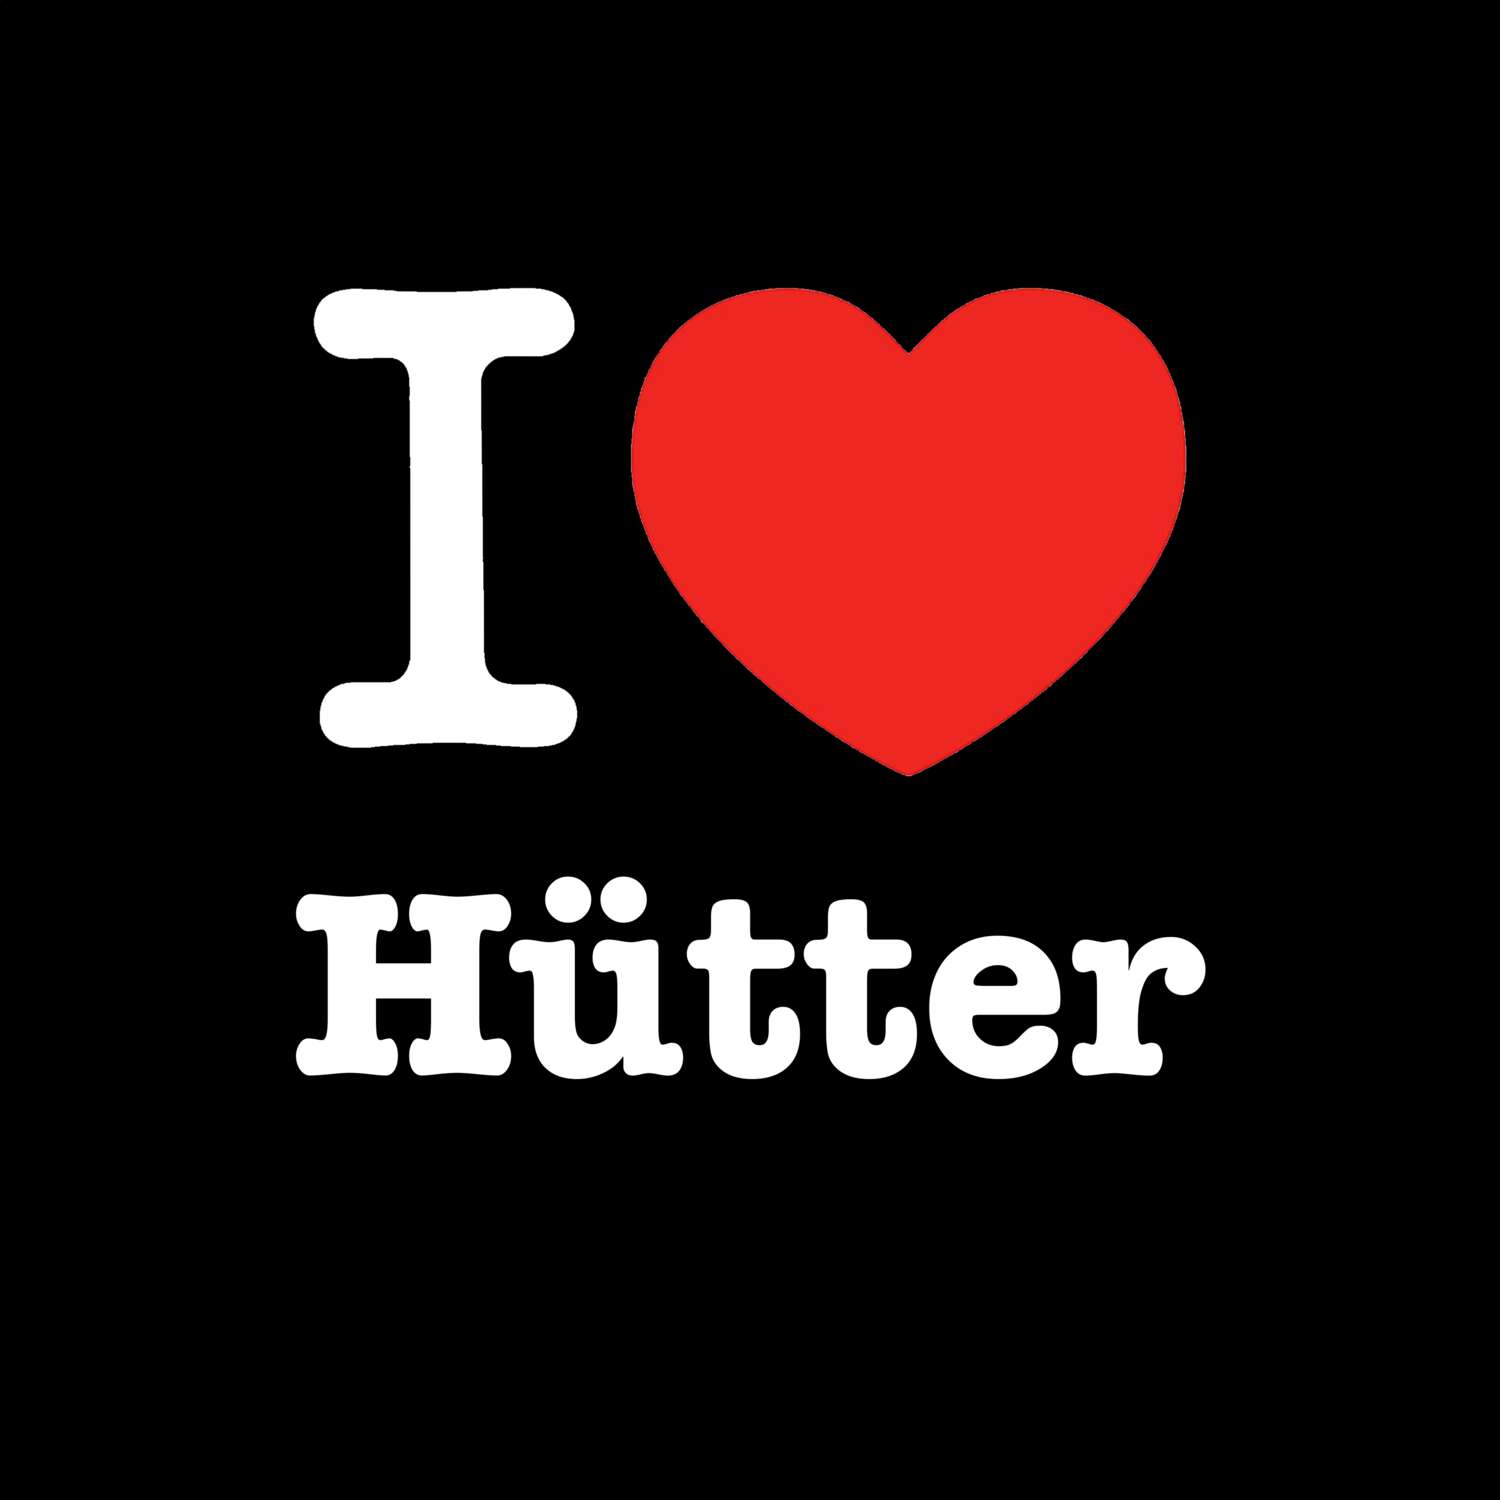 Hütter T-Shirt »I love«